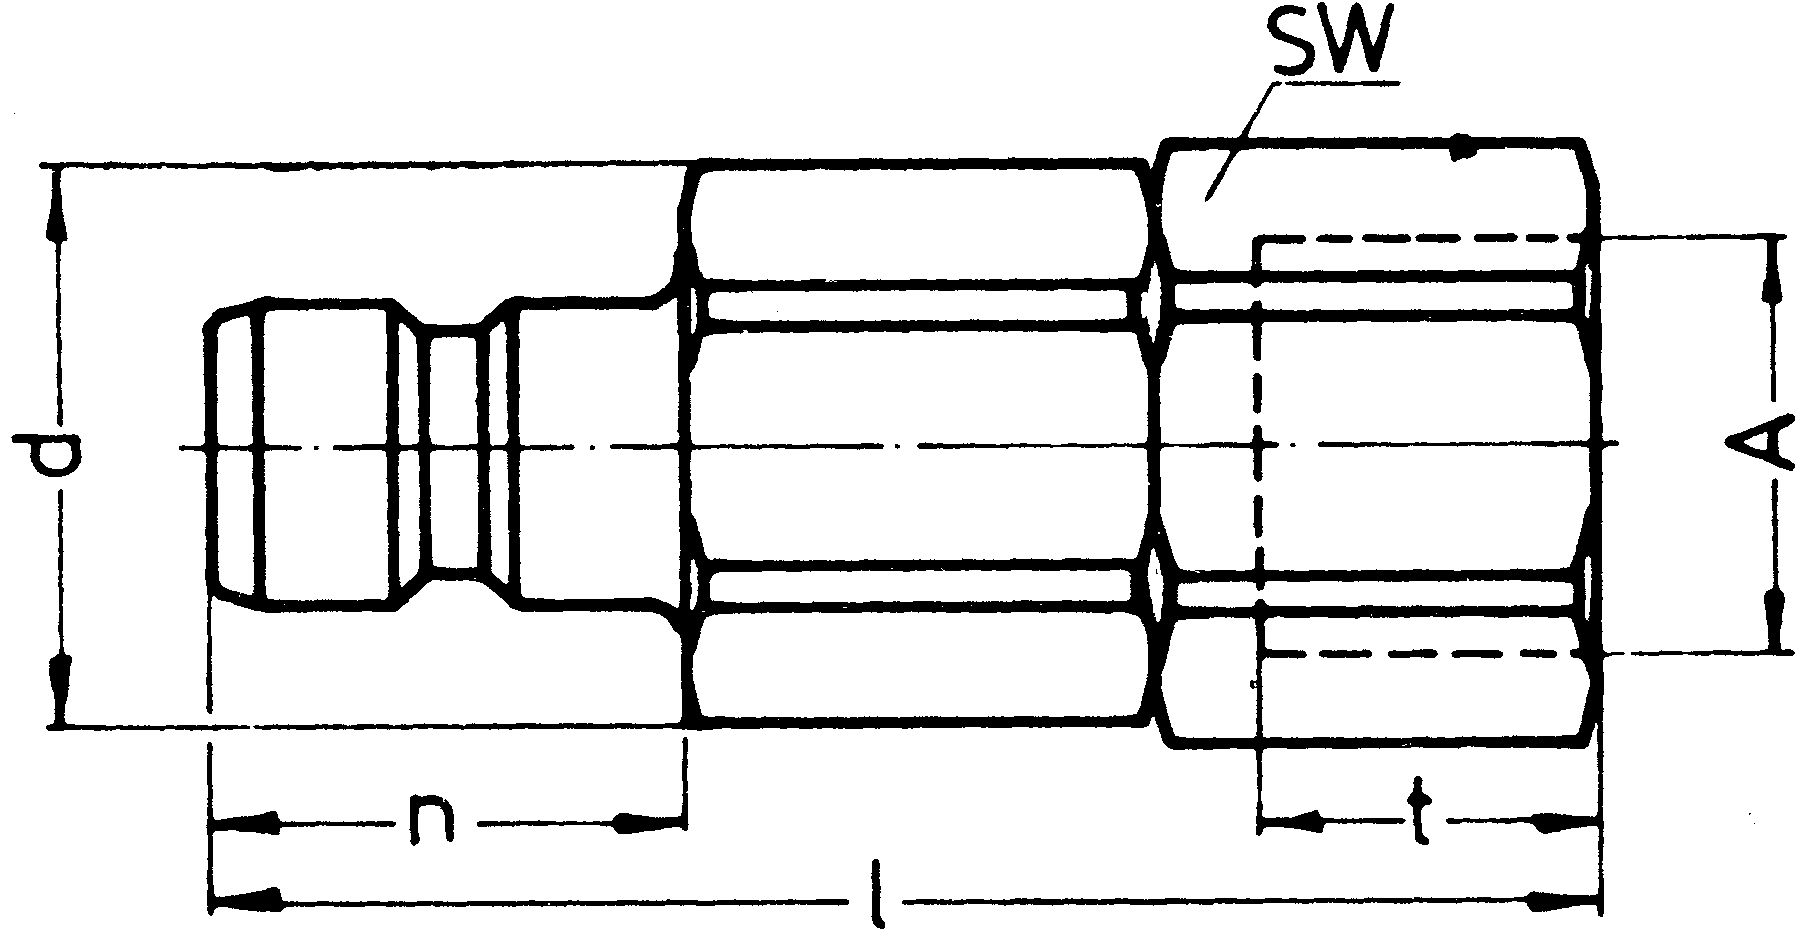 SP-009-2-WR521-21-1-Z02-OV-EB